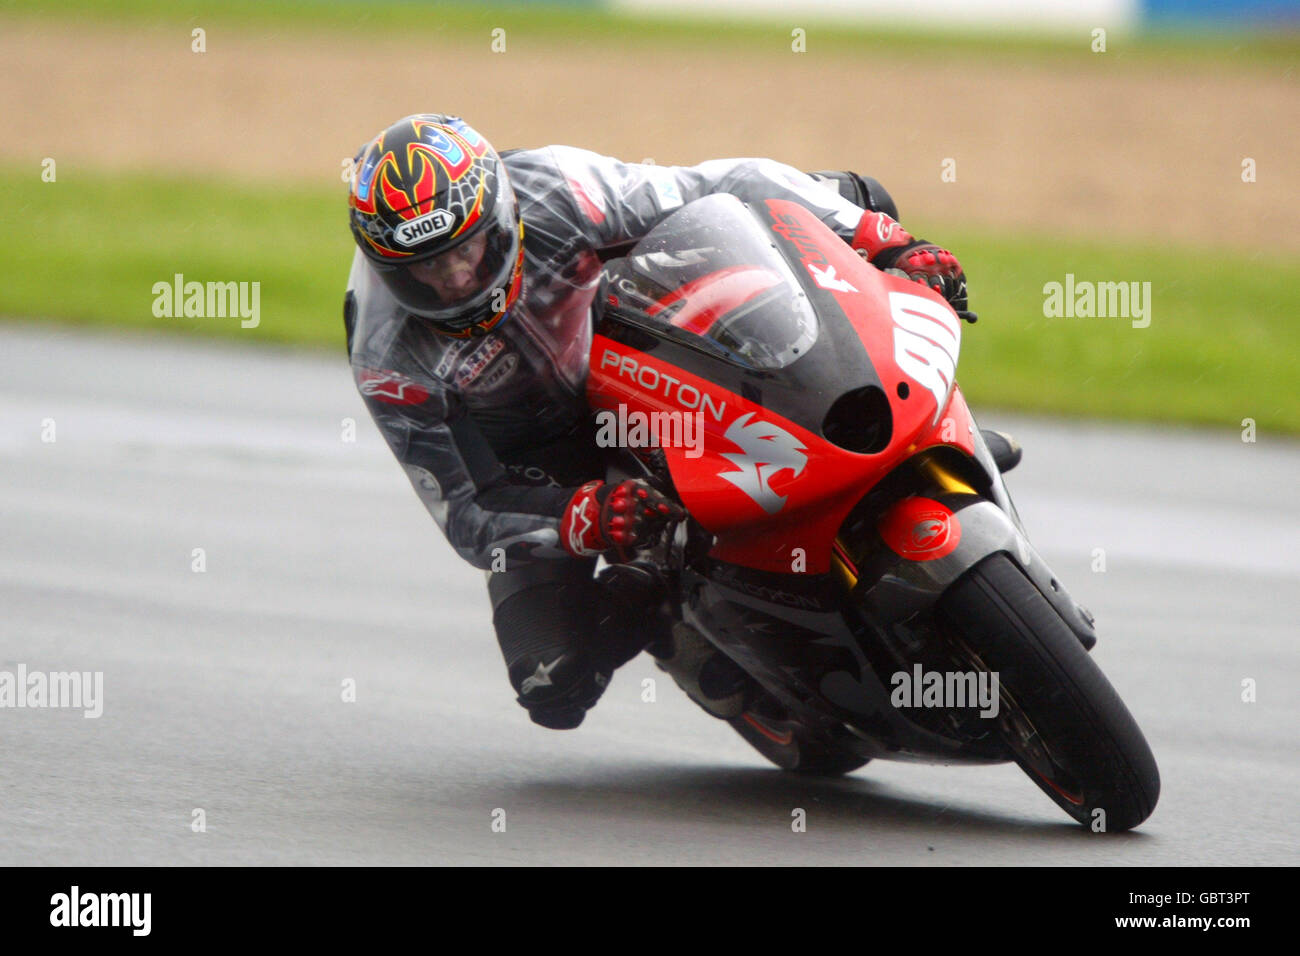 Motorradfahren - großer Preis von Großbritannien - Moto GP - Rennen. Kurtis Roberts in Aktion Stockfoto